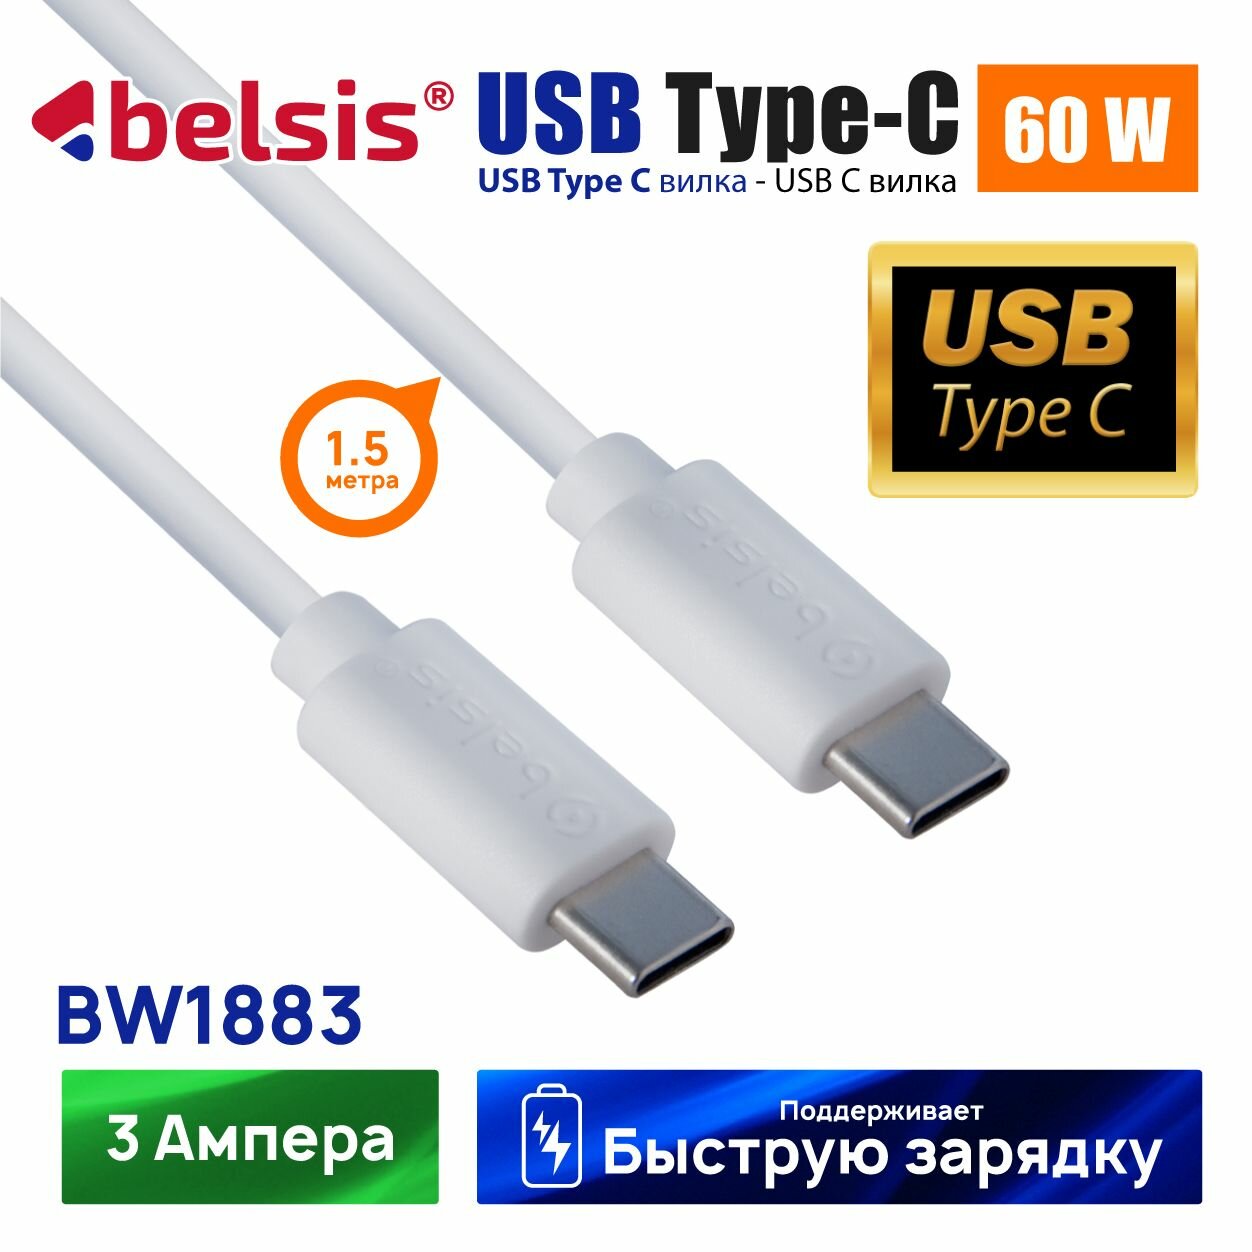 Кабель для зарядки USB Type-C - Type-C High-speed, Belsis, 1,5 метра, 60W 3А быстрая зарядка, до 480 Мбит/с передача данных, BW1883